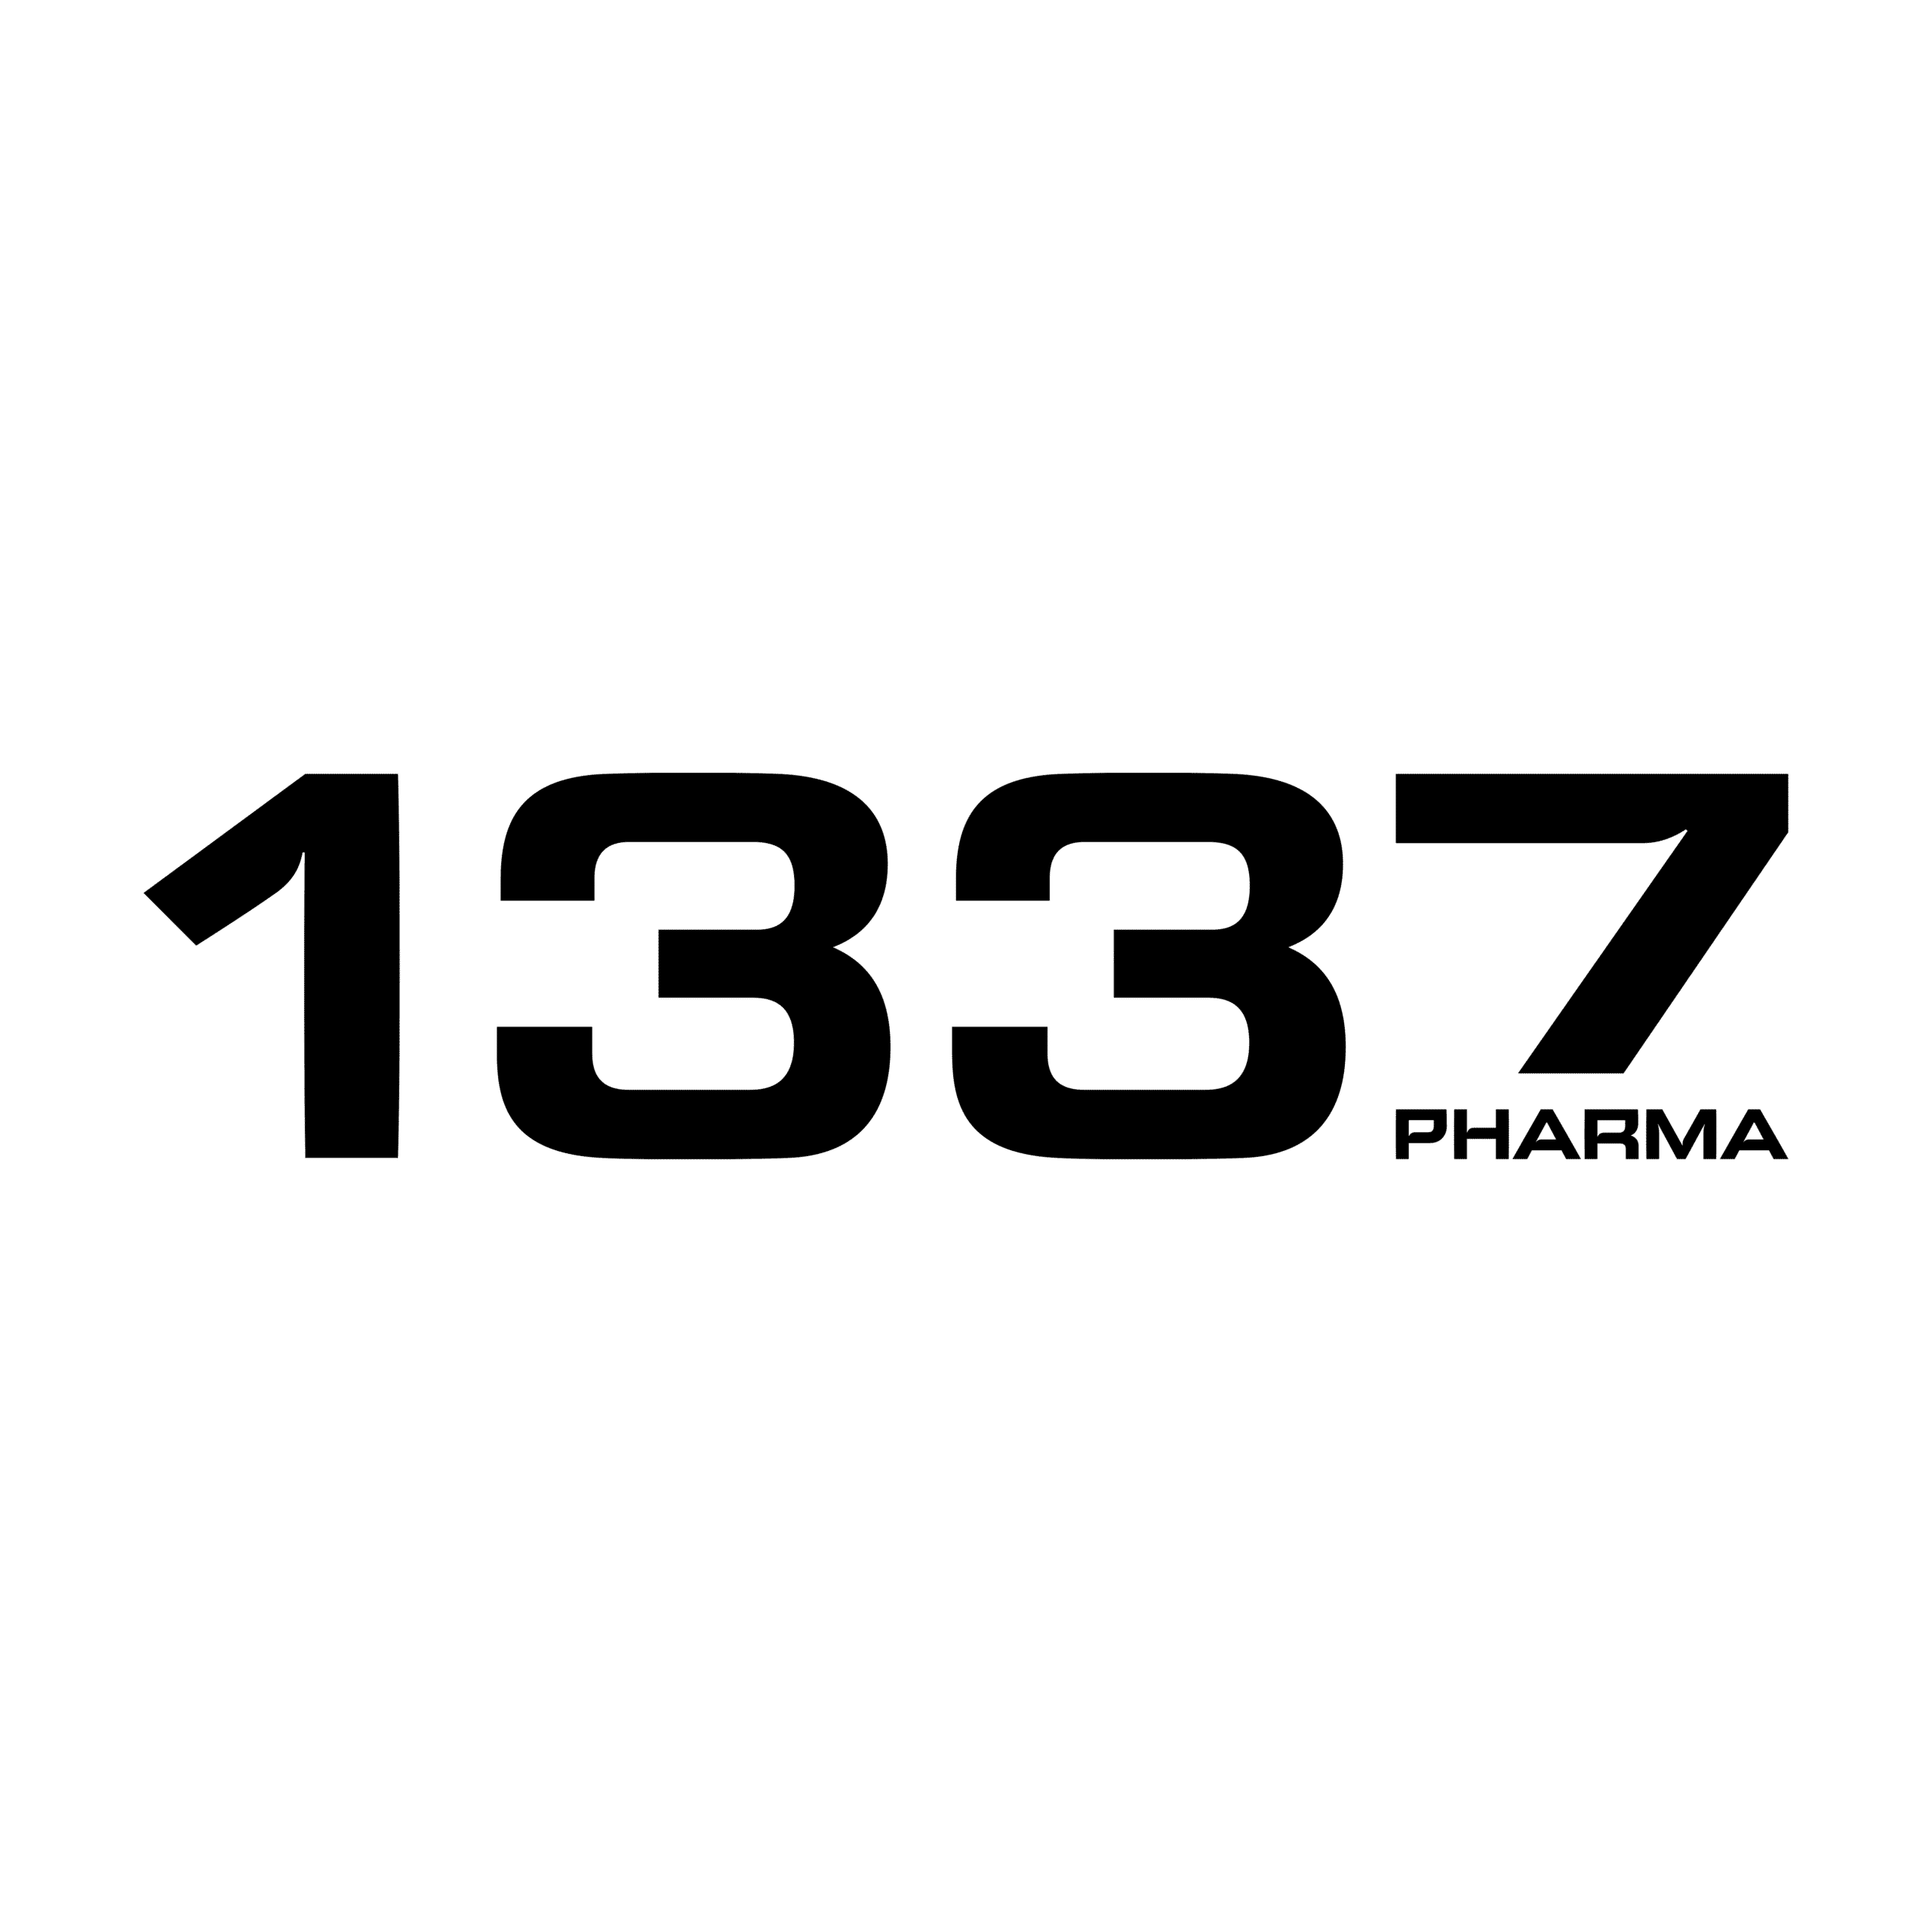 1337 Pharma